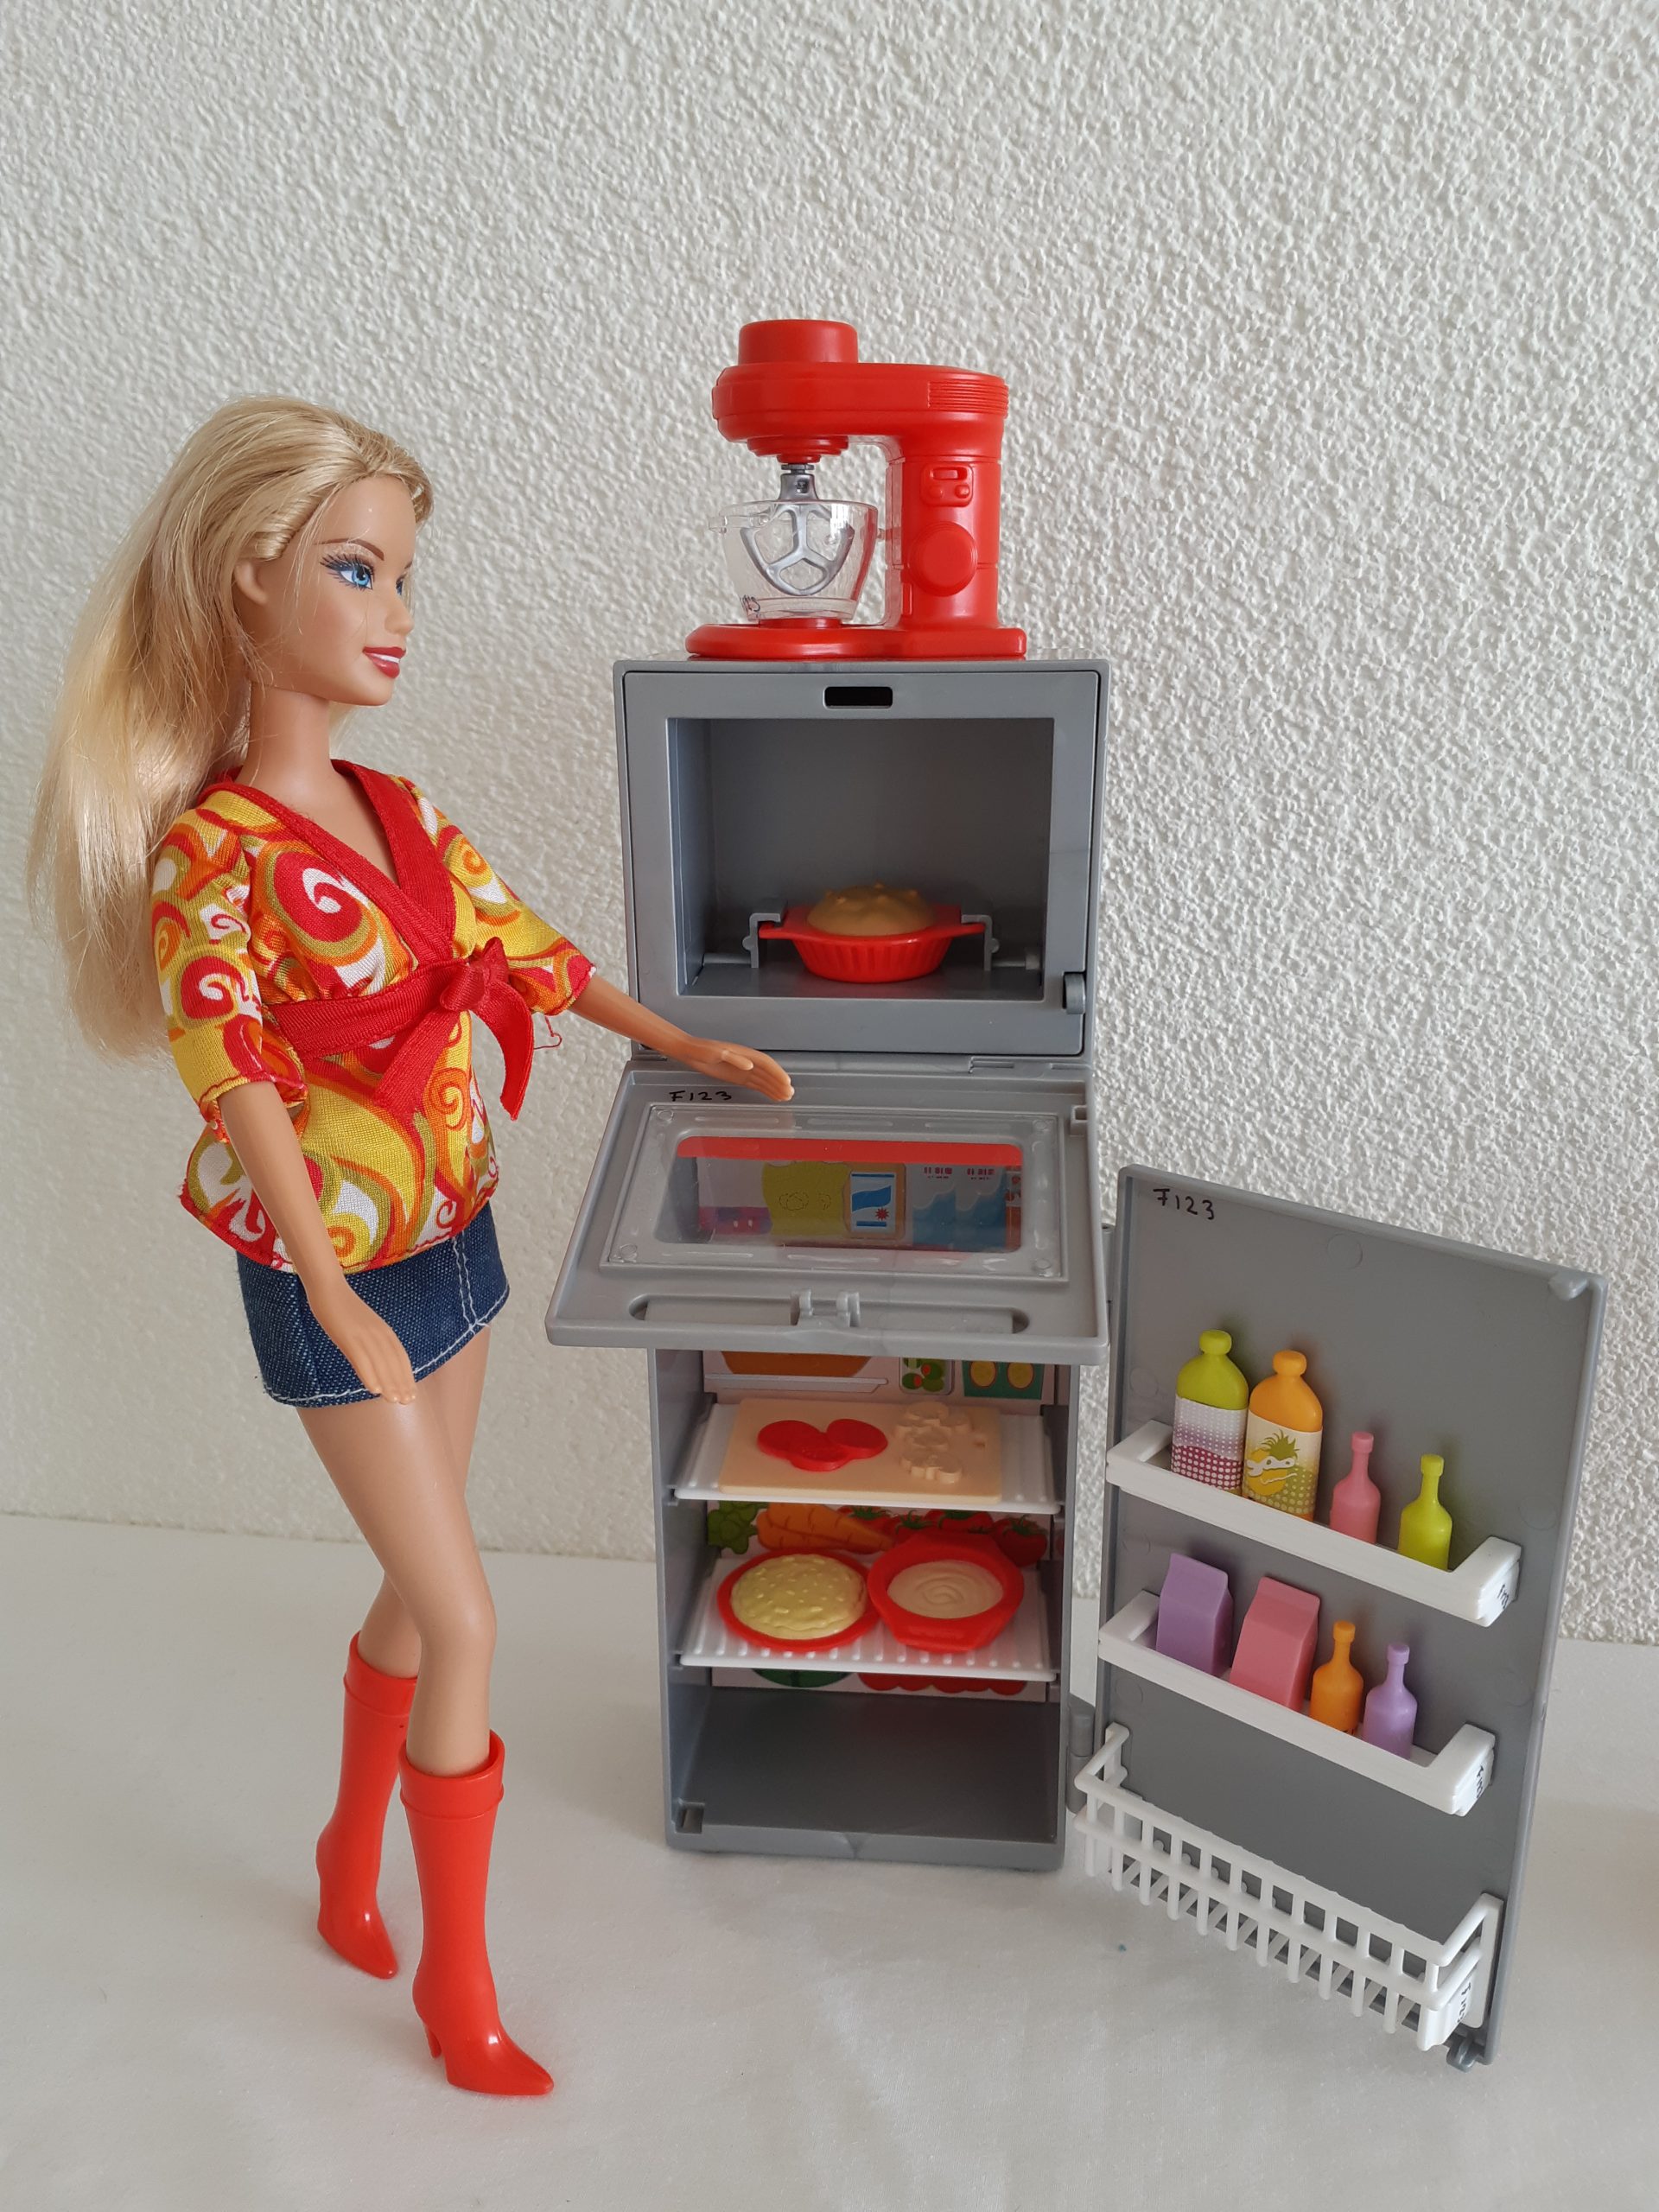 kam Wetland zacht Barbie TV Keuken - Speel-o-Theek Hillegom